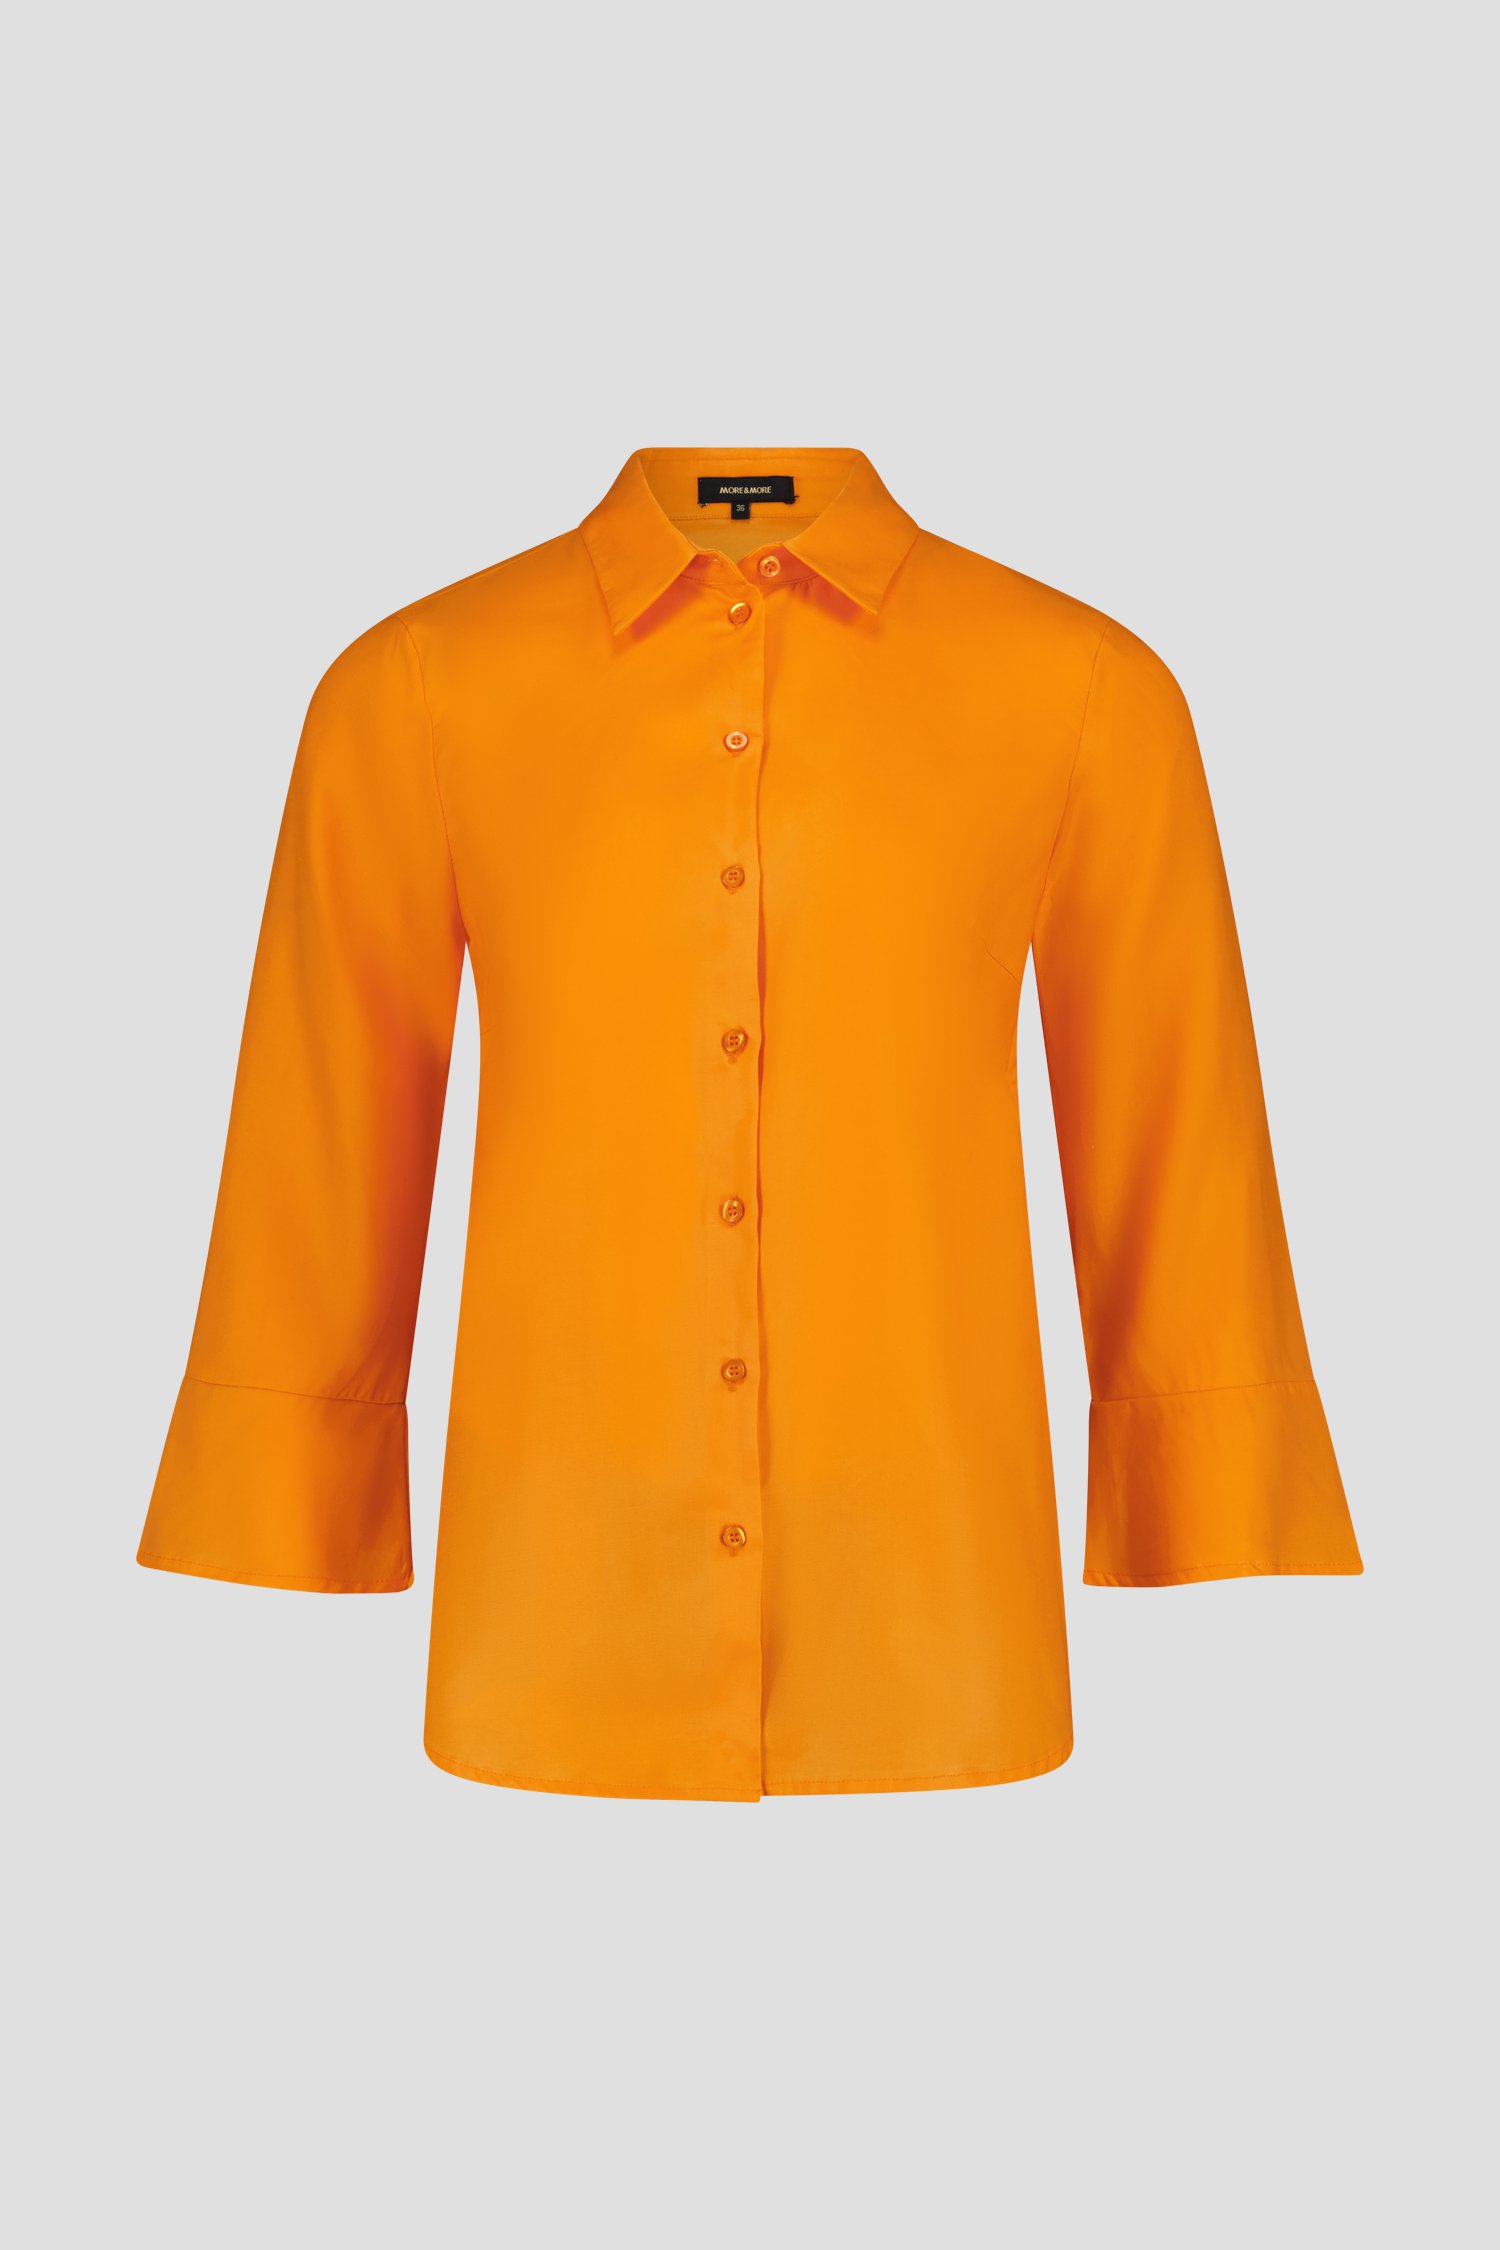 Blouse orange à manches 3/4 élégantes de More & More pour Femmes